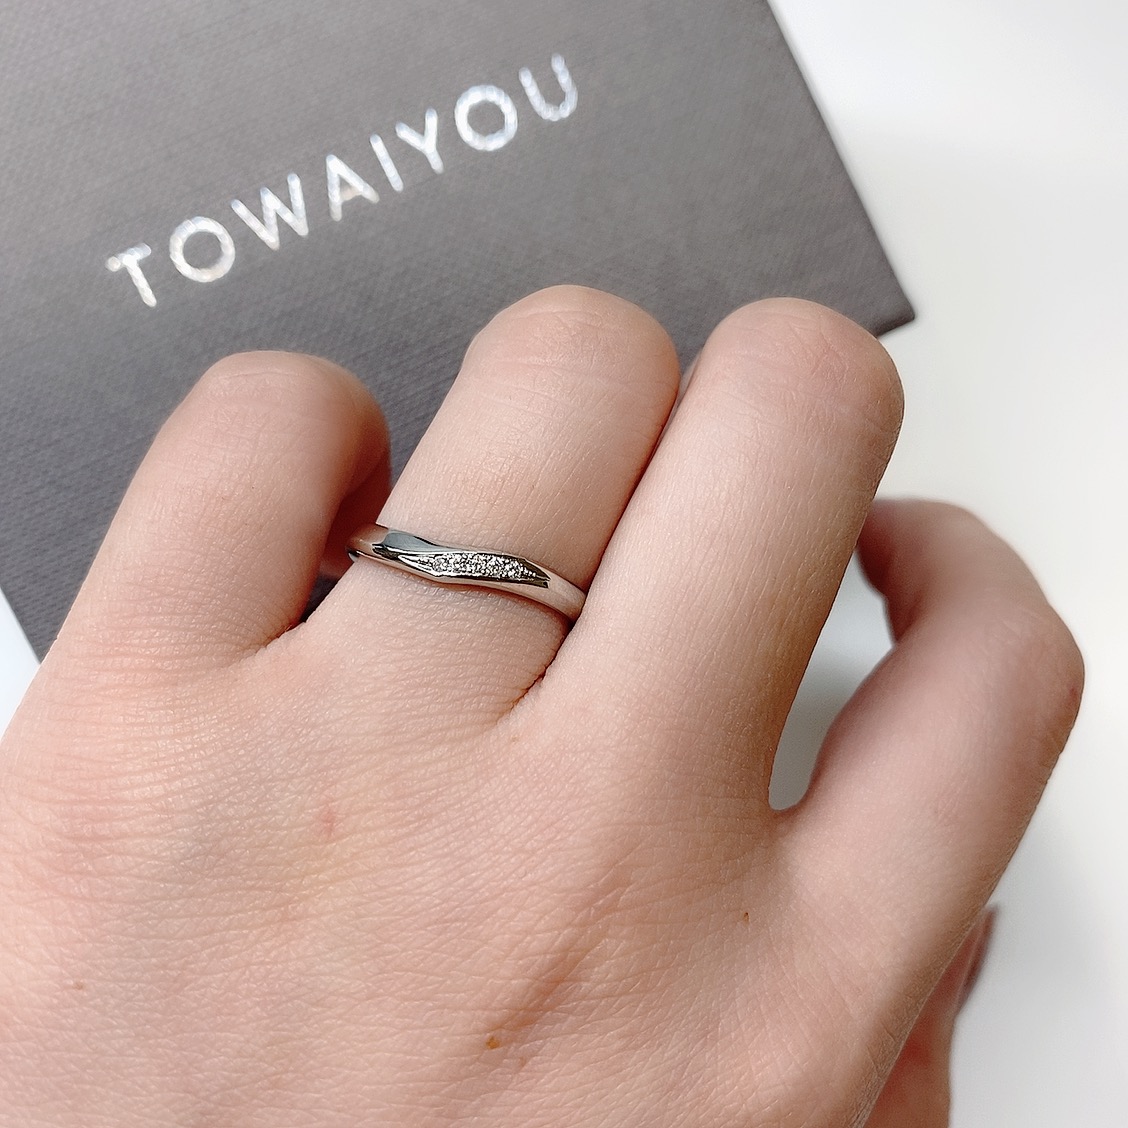 TOWAIYOU OCEAN オーシャン – 浜松市最大級の婚約指輪や結婚指輪が揃う